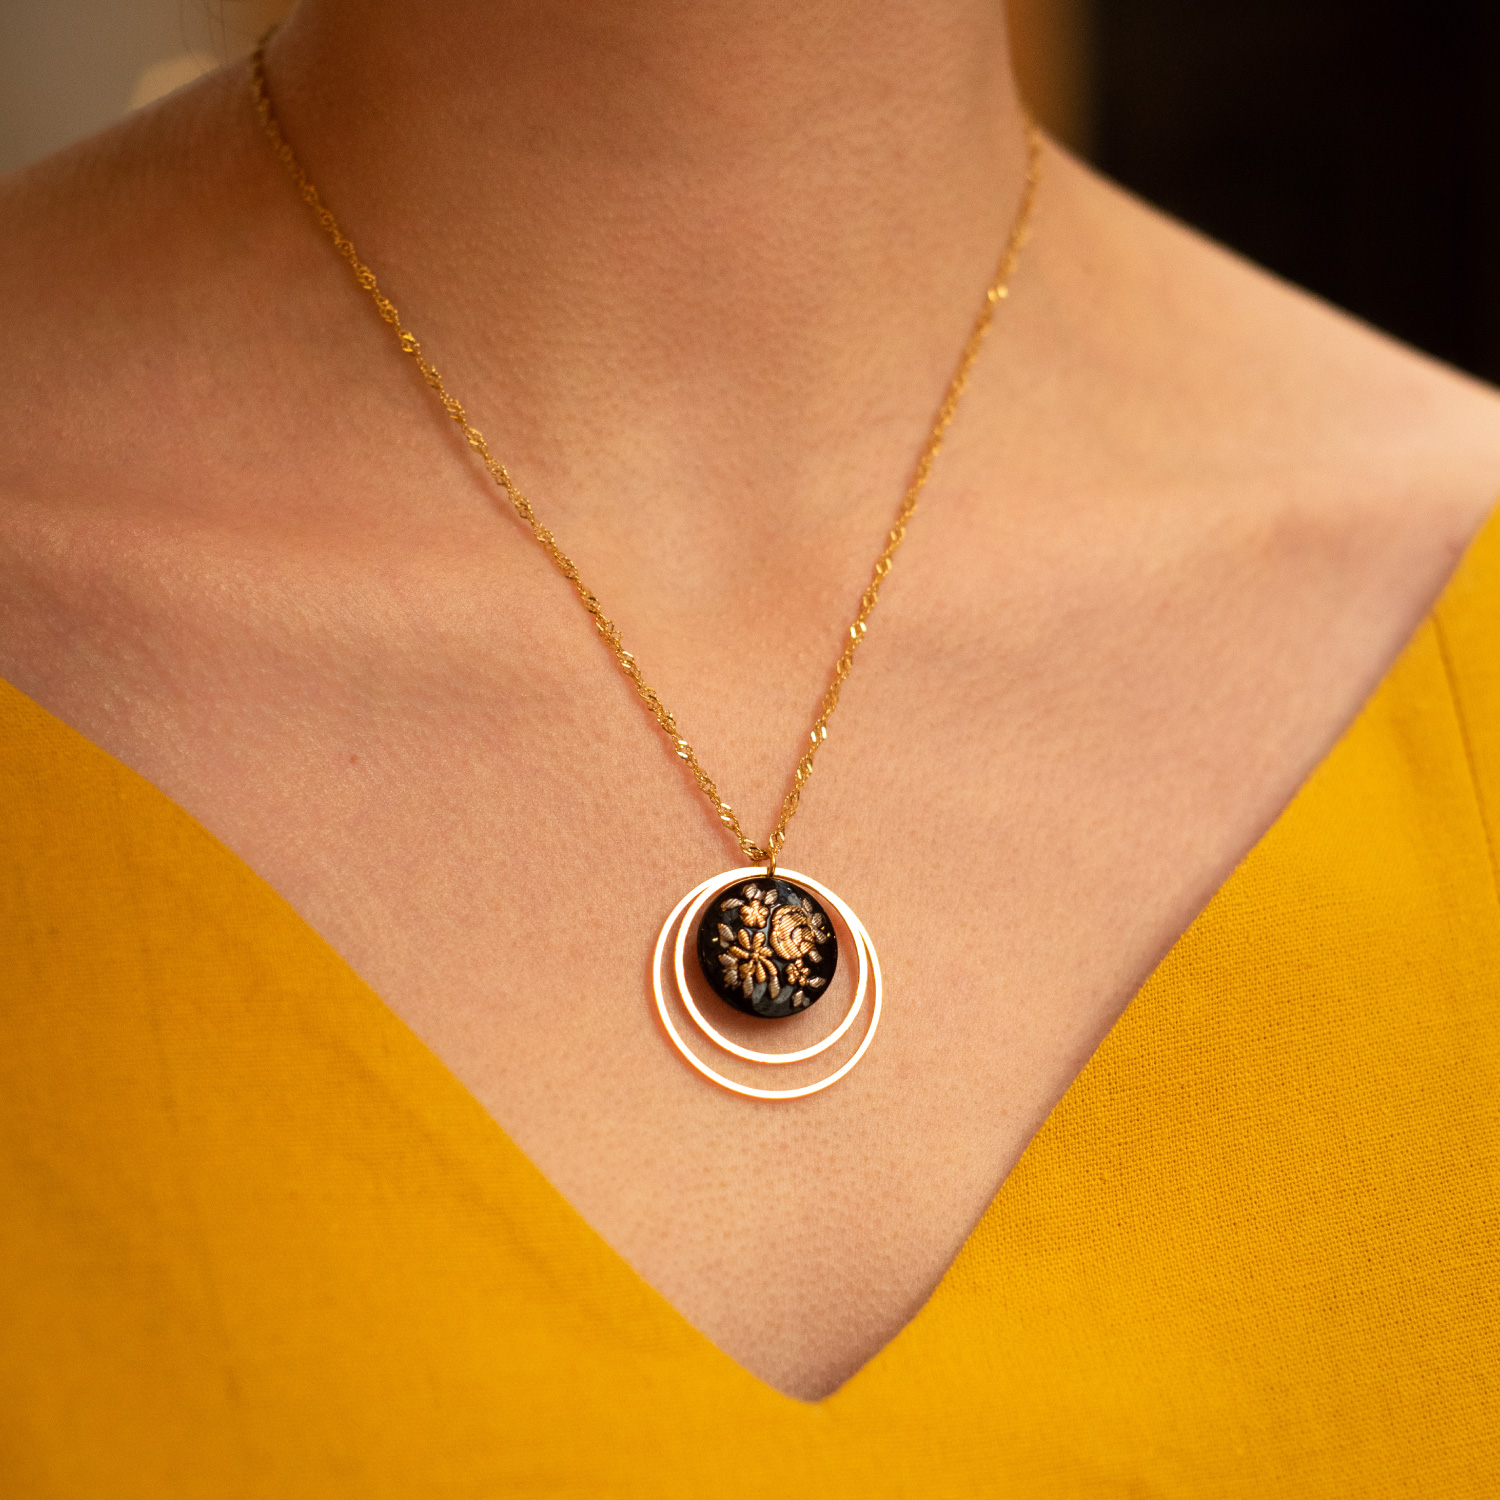 Collier Lunare Daisy – bouton ancien 1940 – Assuna – bijoux d’inspiration vintage